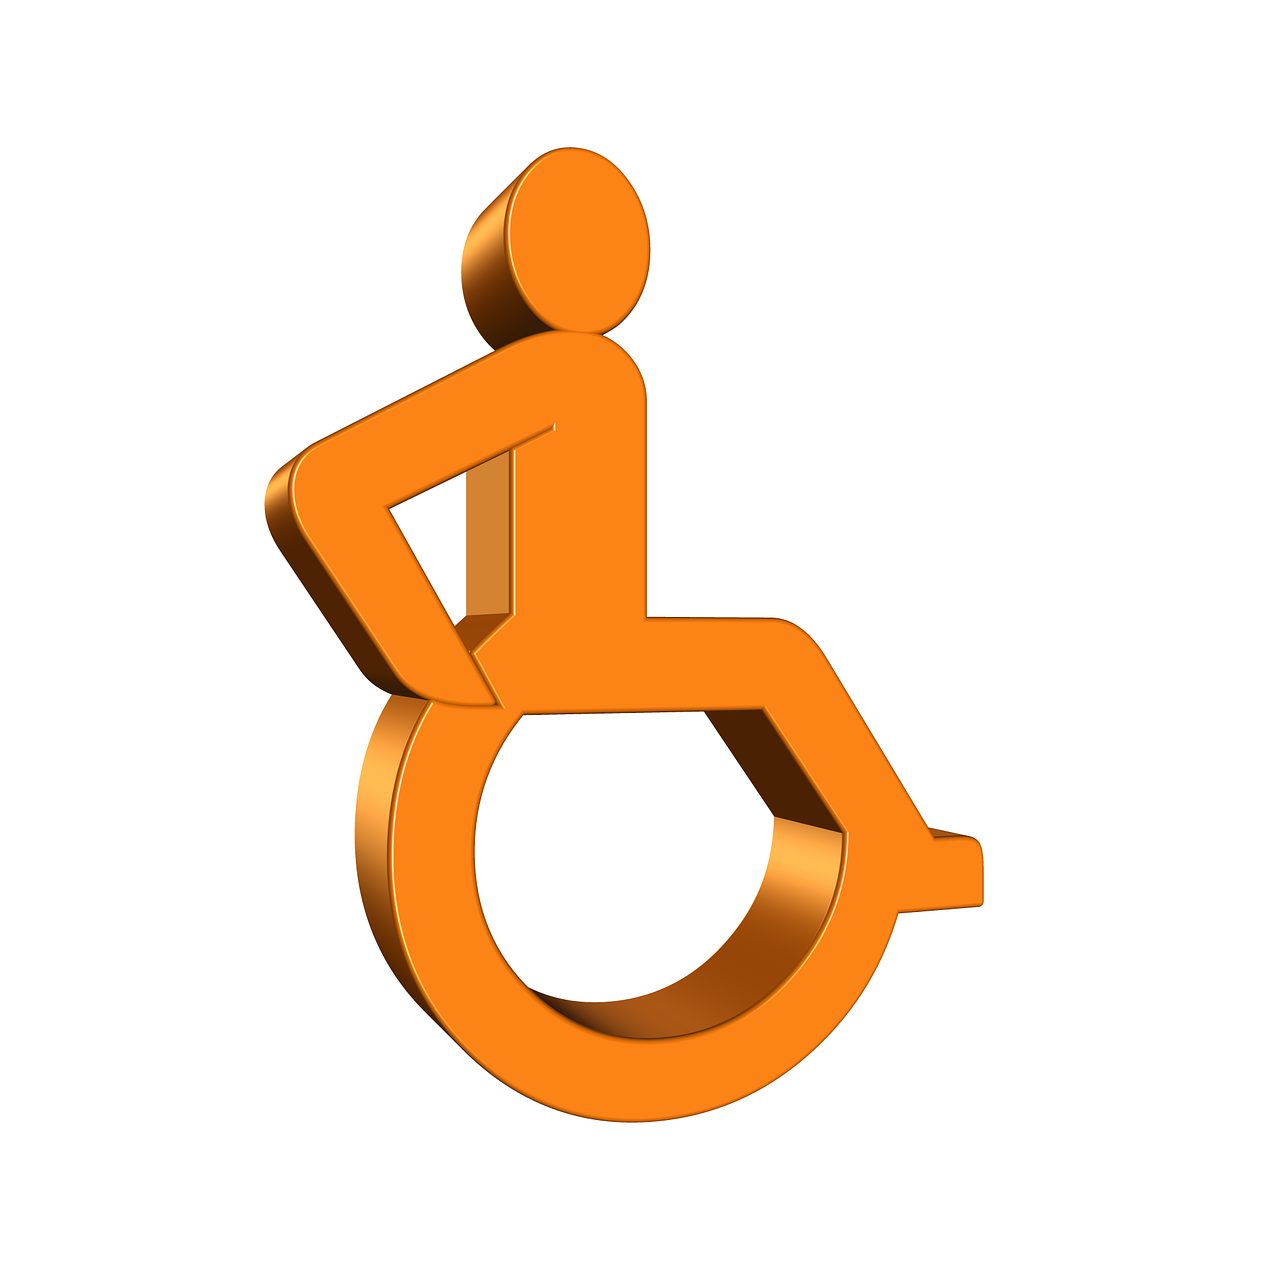 Kentalis beoordeling instelling gehandicaptenzorg verstandelijk gehandicapten